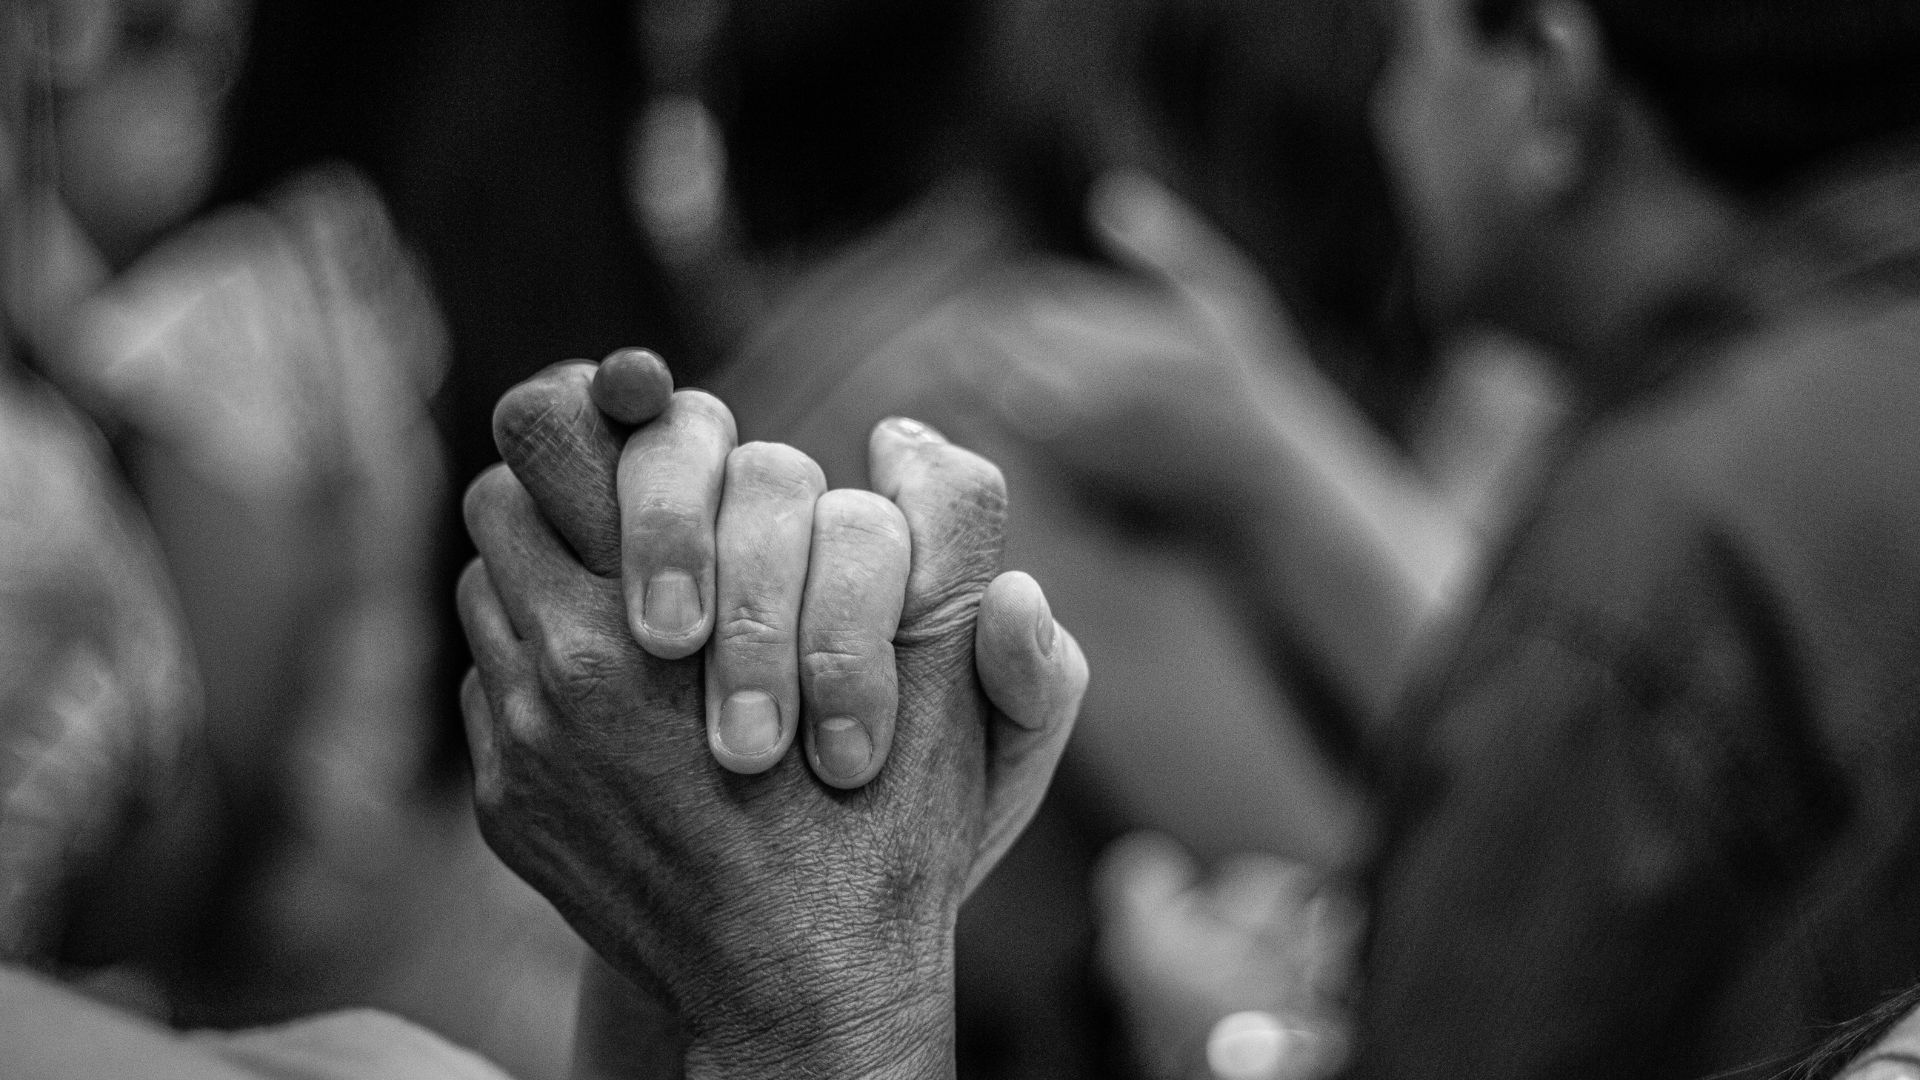 Ein Bild in schwarz-weiß, auf dem zwei Menschen ihre Hände halten.